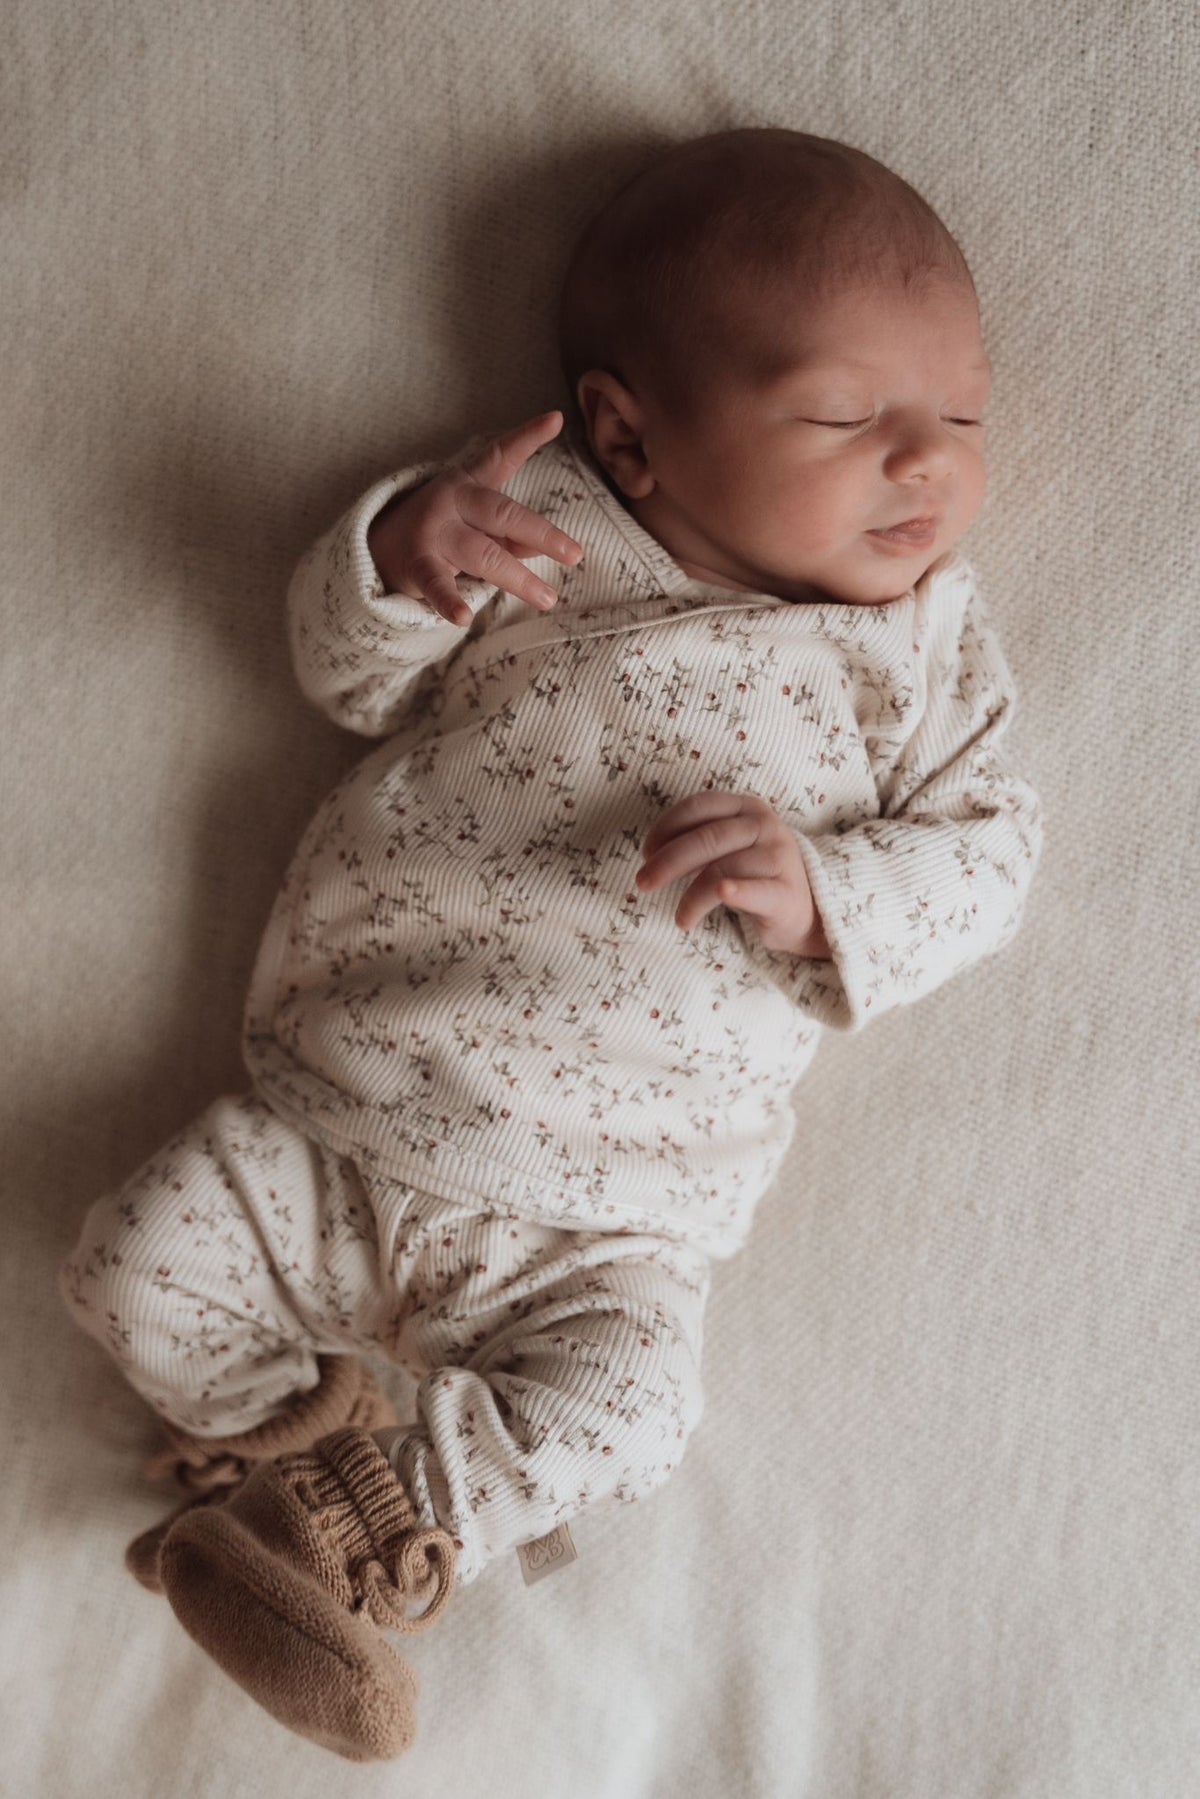 Vreedzame slaap: een pasgeboren baby slaapt stevig verpakt in warme tinten en gezellige texturen van OEKO-TEX gecertificeerde Osman Broekje Appeltakken, die onschuld en rust belichamen.